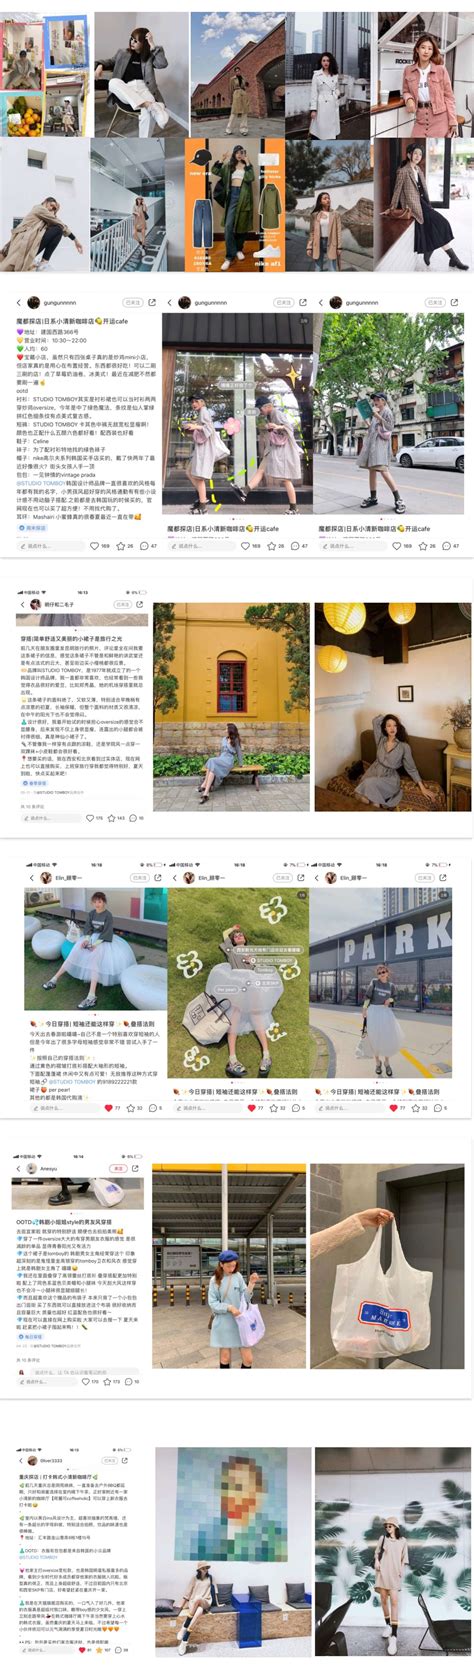 STUDIO TOMBOY2019年春夏季度小红书推广 - 松宫（上海）文化传播有限公司